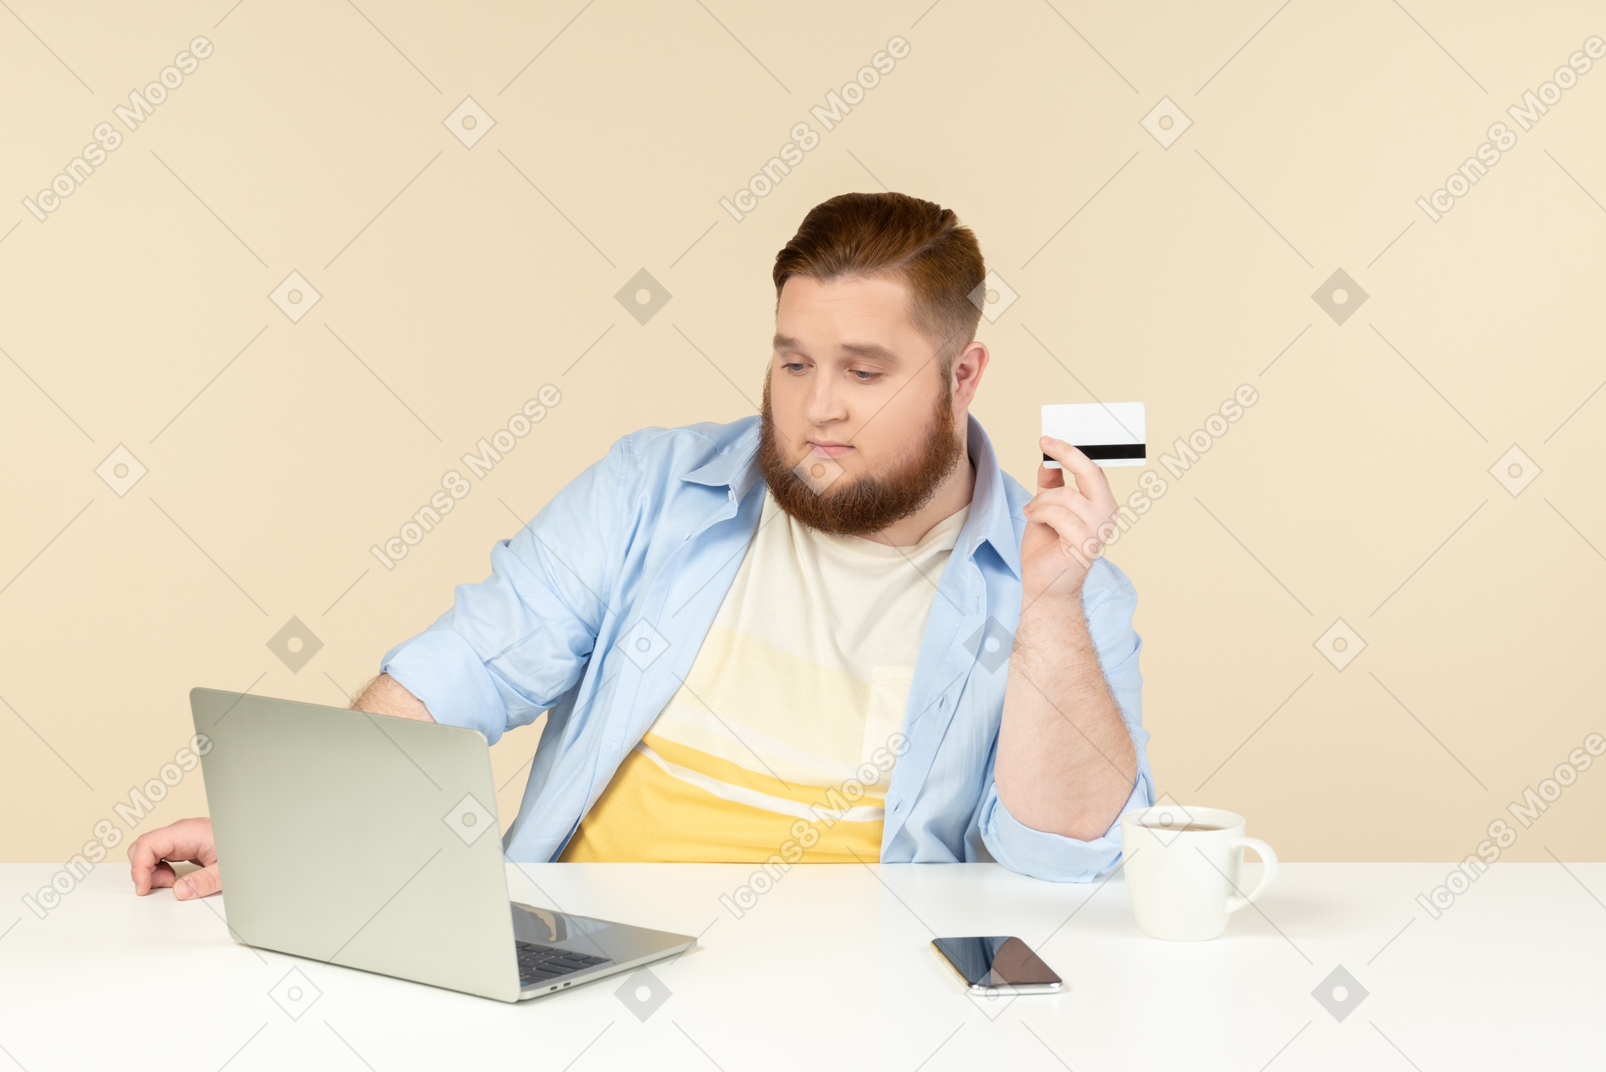 Junger übergewichtiger mann, der am laptop sitzt und scheckkarte hält